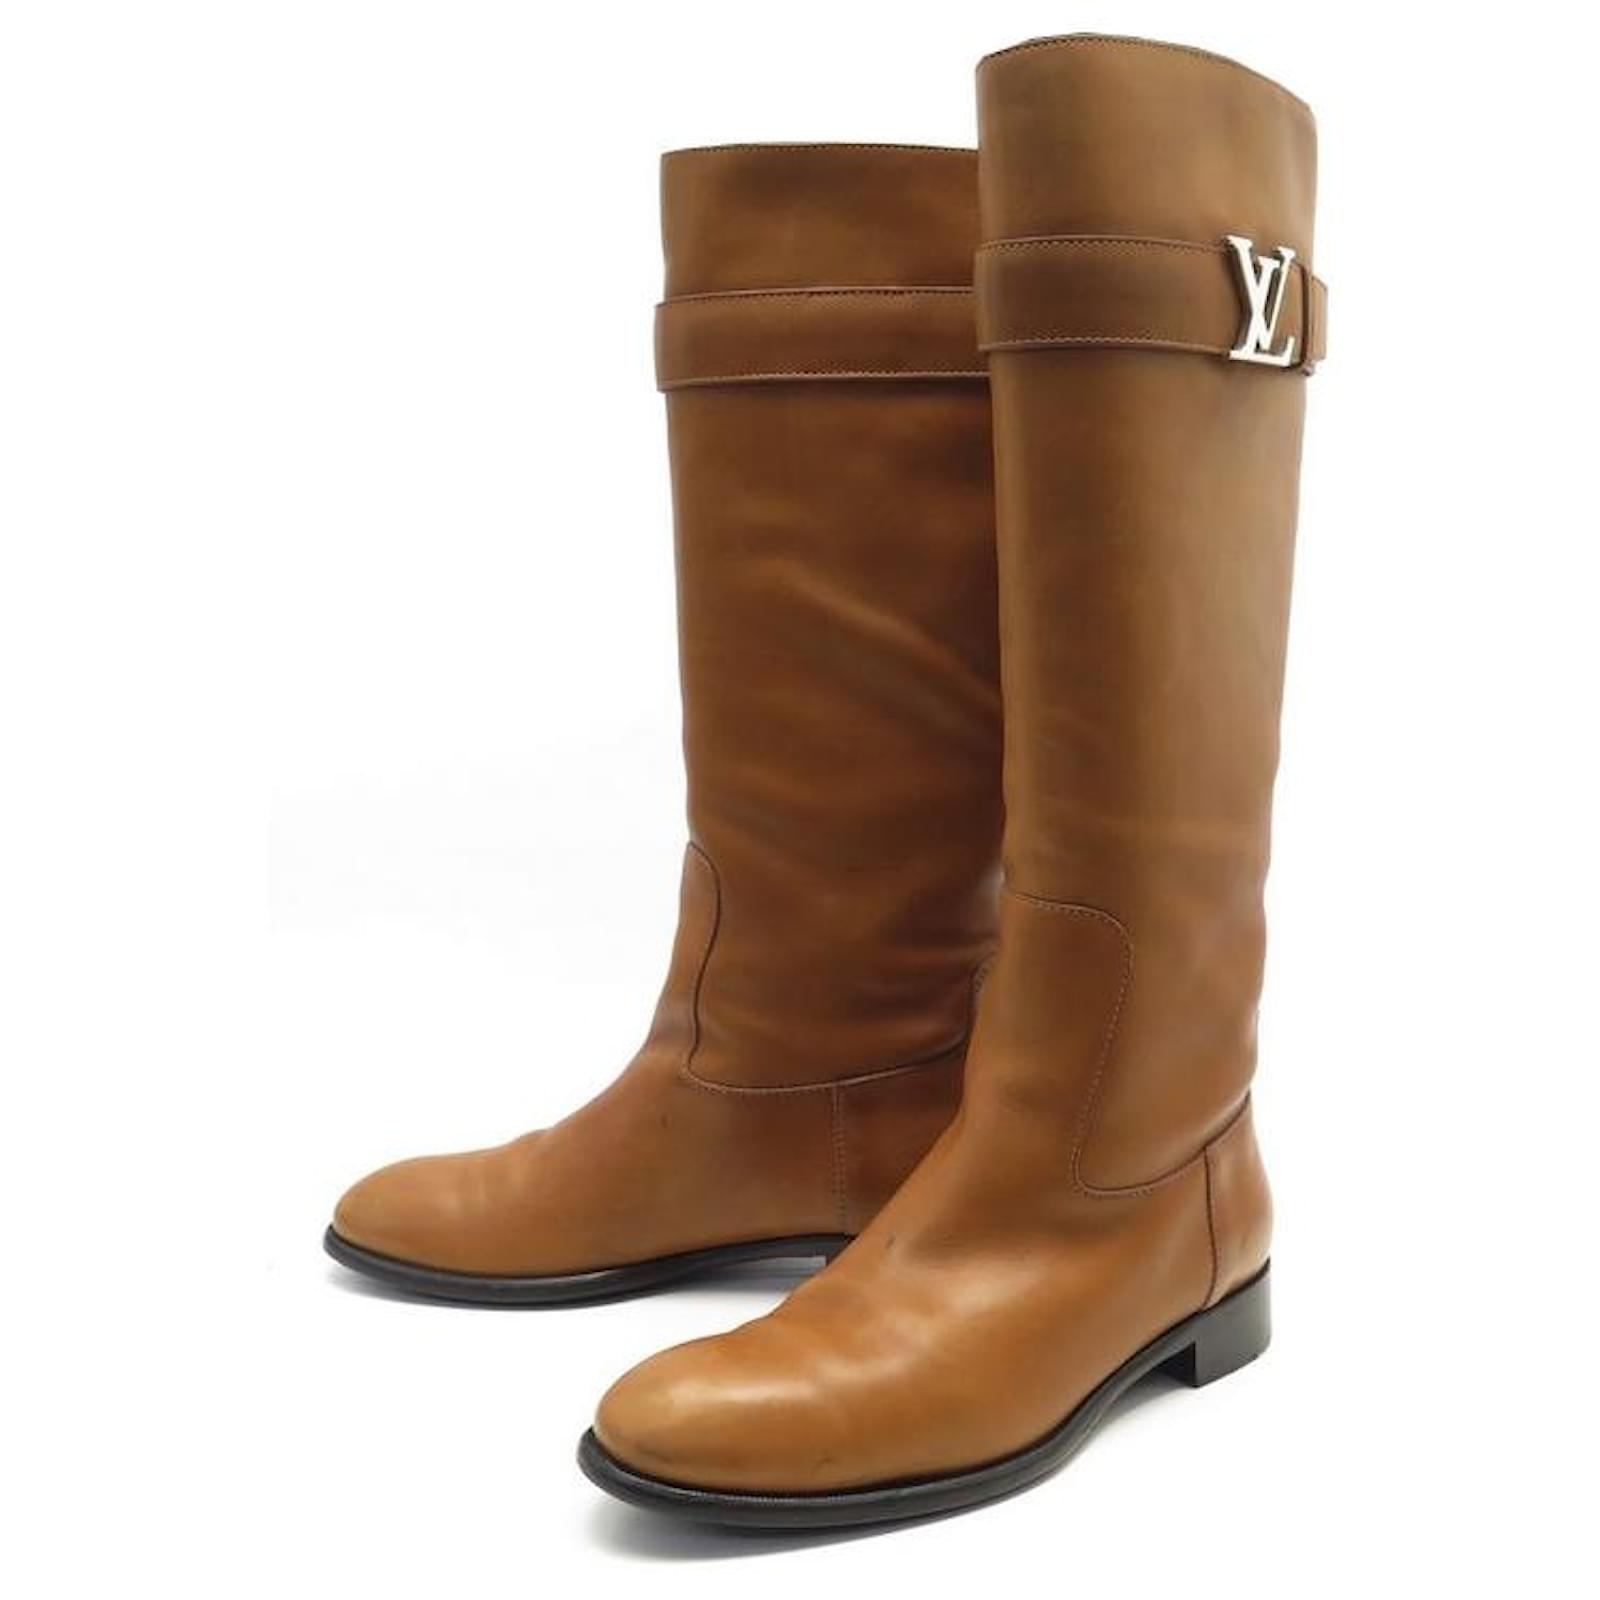 Louis Vuitton Monogram Leather Riding Boots - ShopStyle